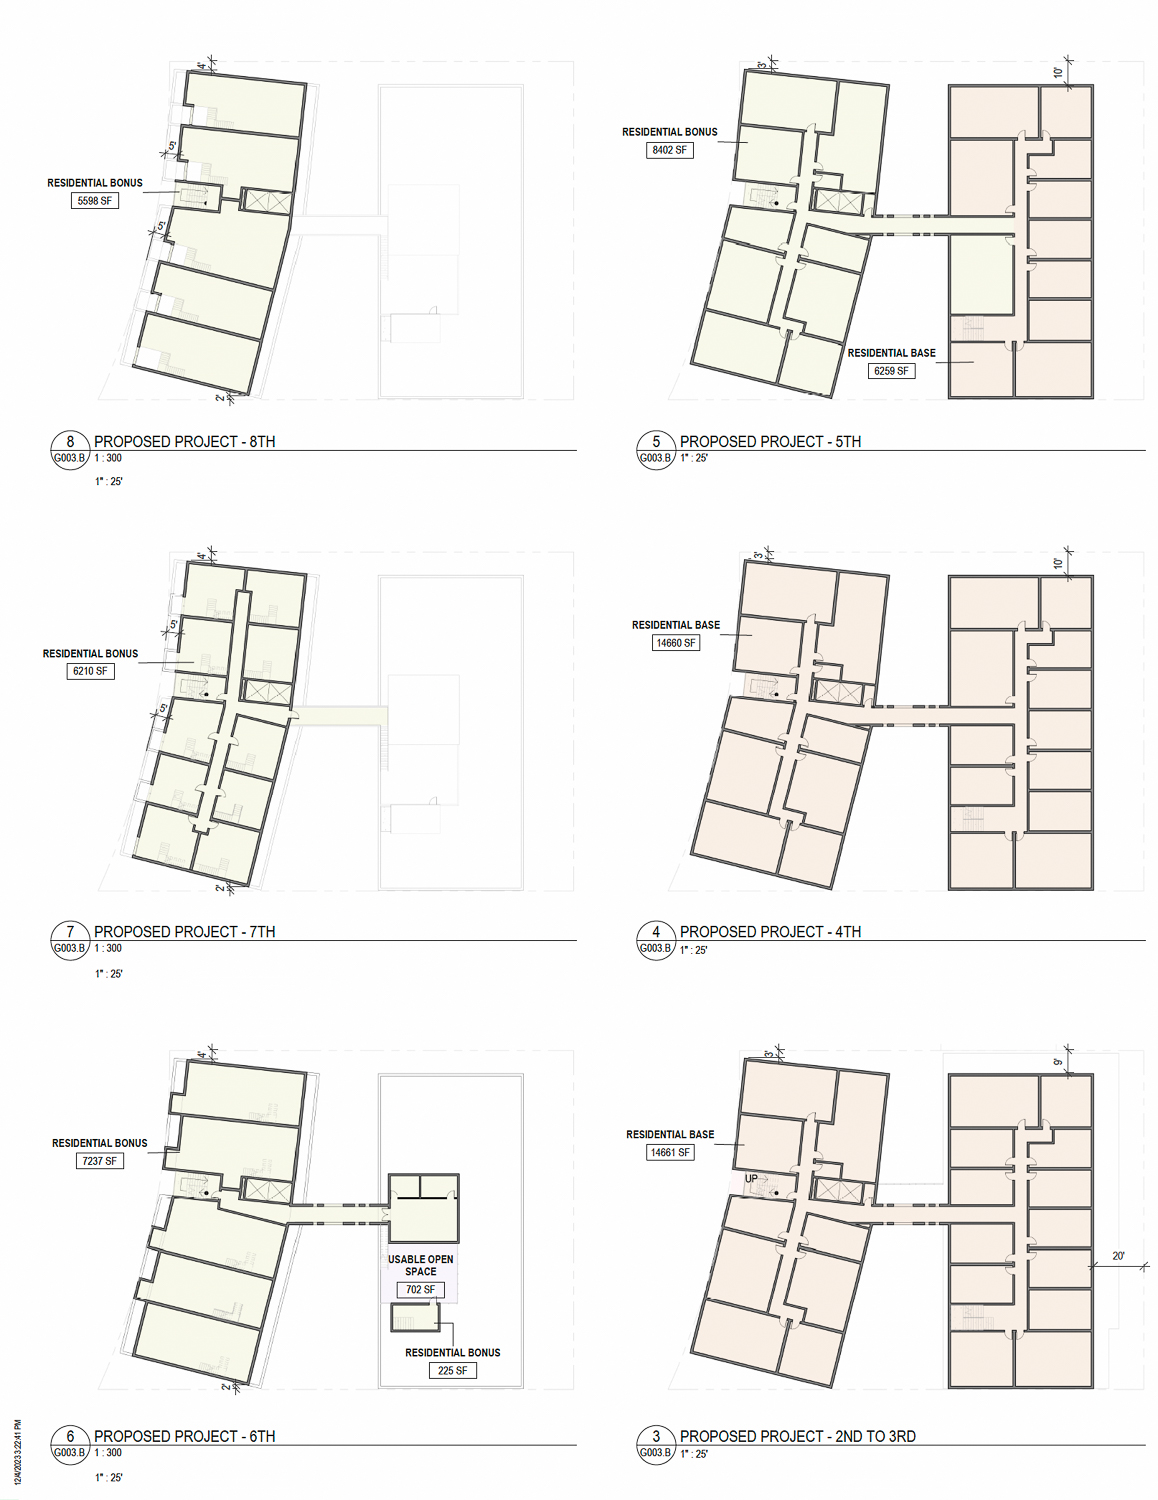 2655 Shattuck Avenue floor plans, illustration by Studio KDA